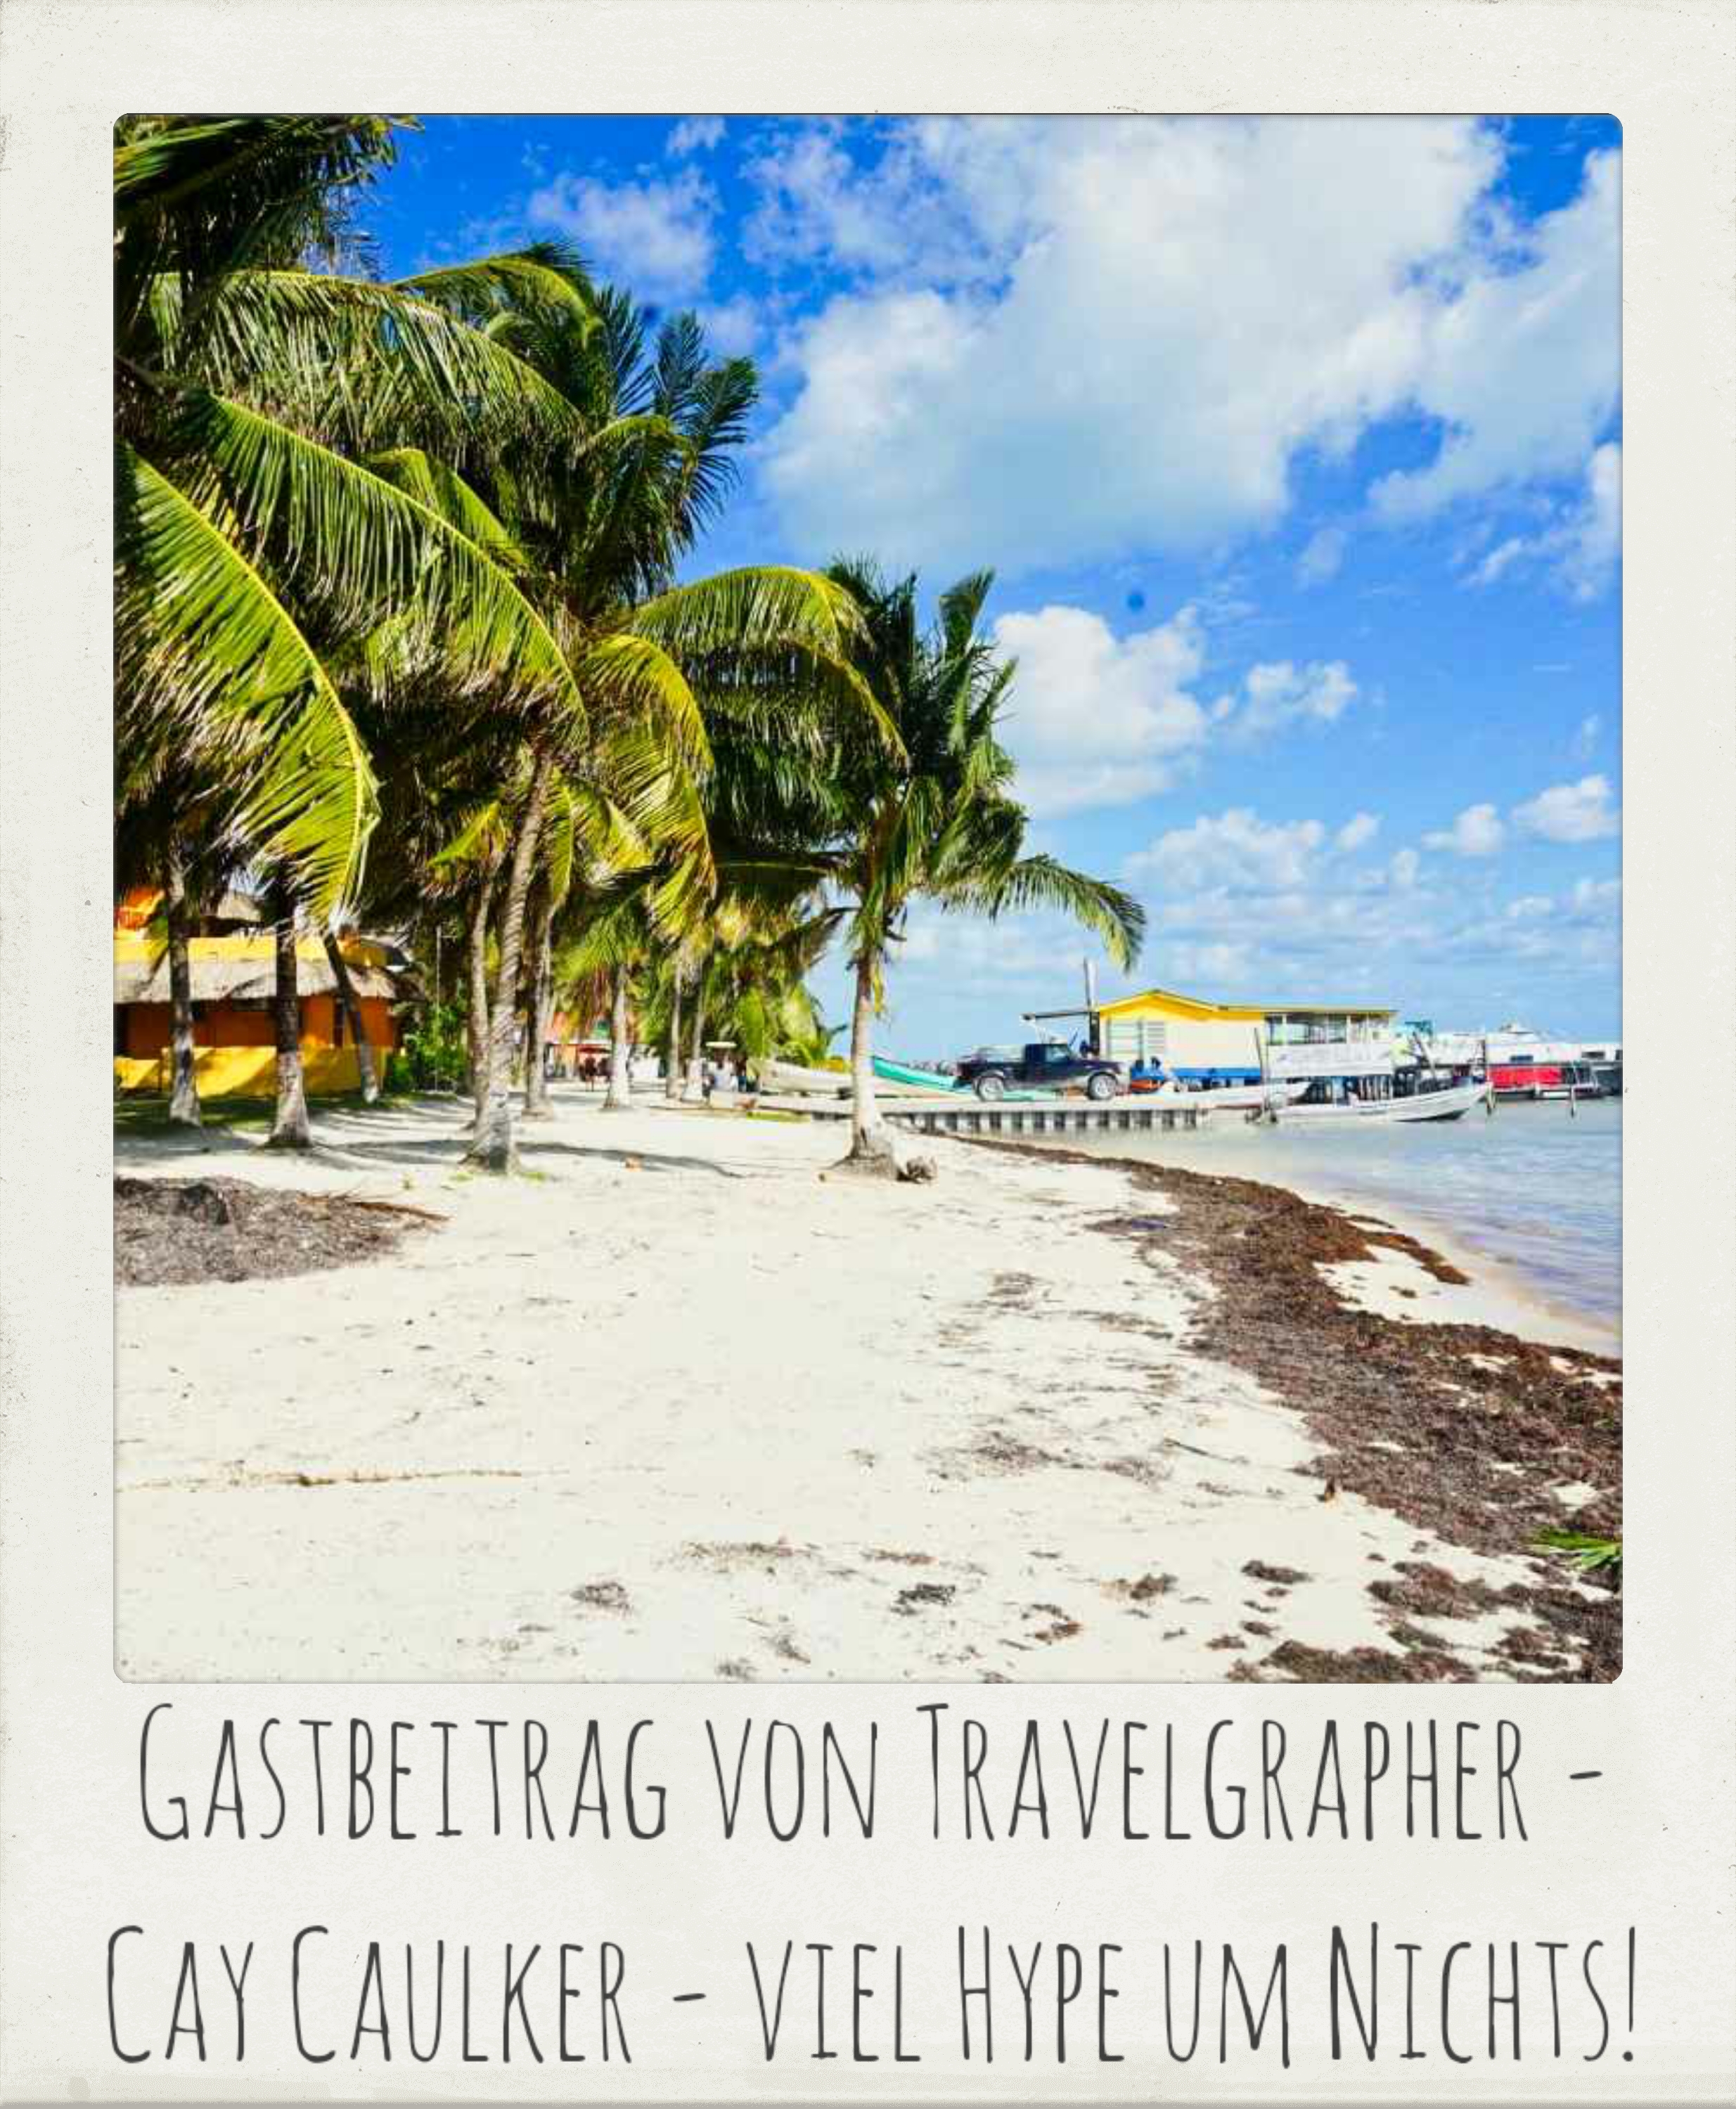 Gastbeitrag von Travelgrapher          Caye Caulker – viel Hype um Nichts!